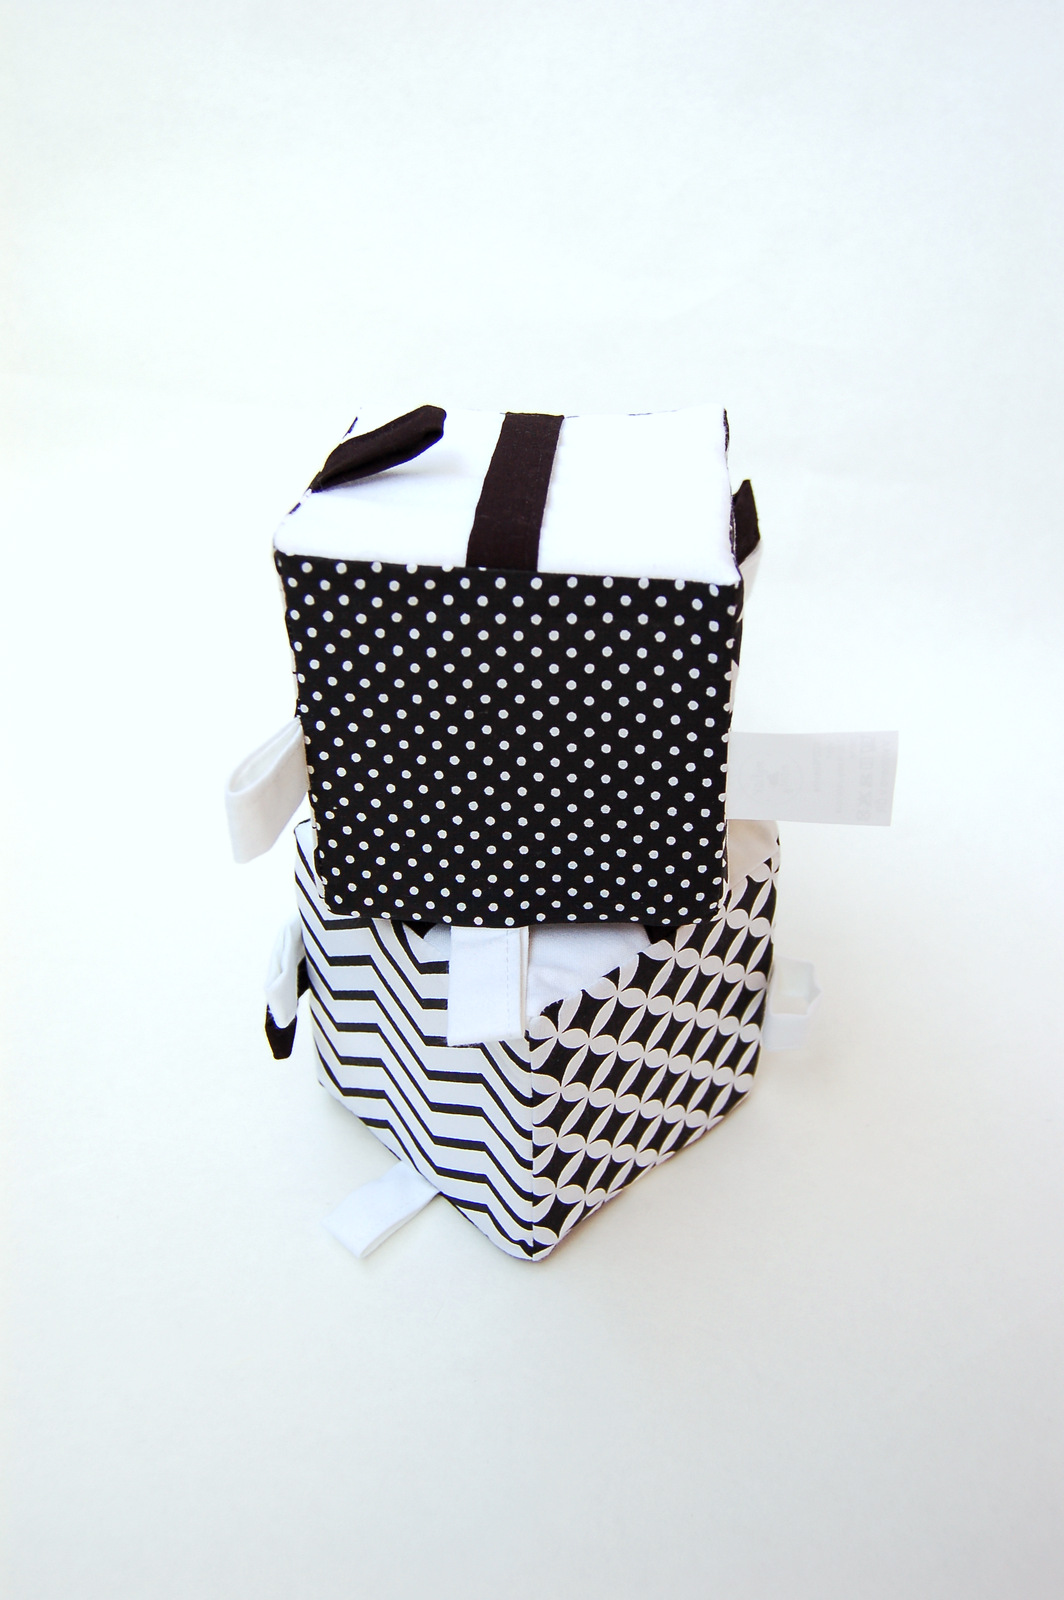 MyMoo Cub Textil Busy Cube – Alb-negru,MyMoo Cub Textil Busy Cube – Alb-negru